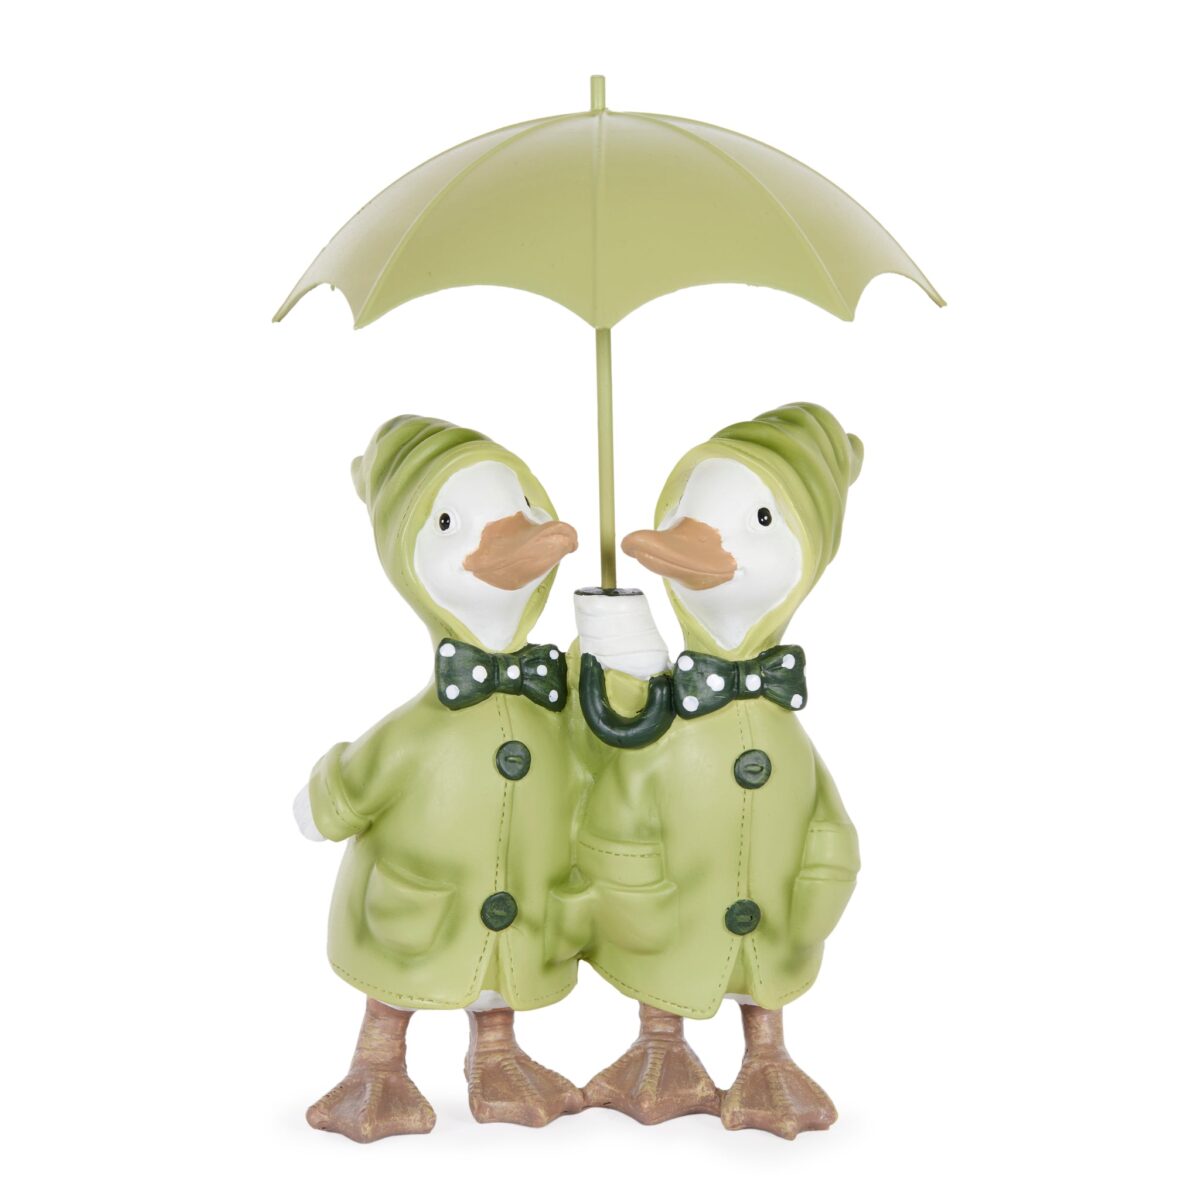 rainy ducks with umbrella